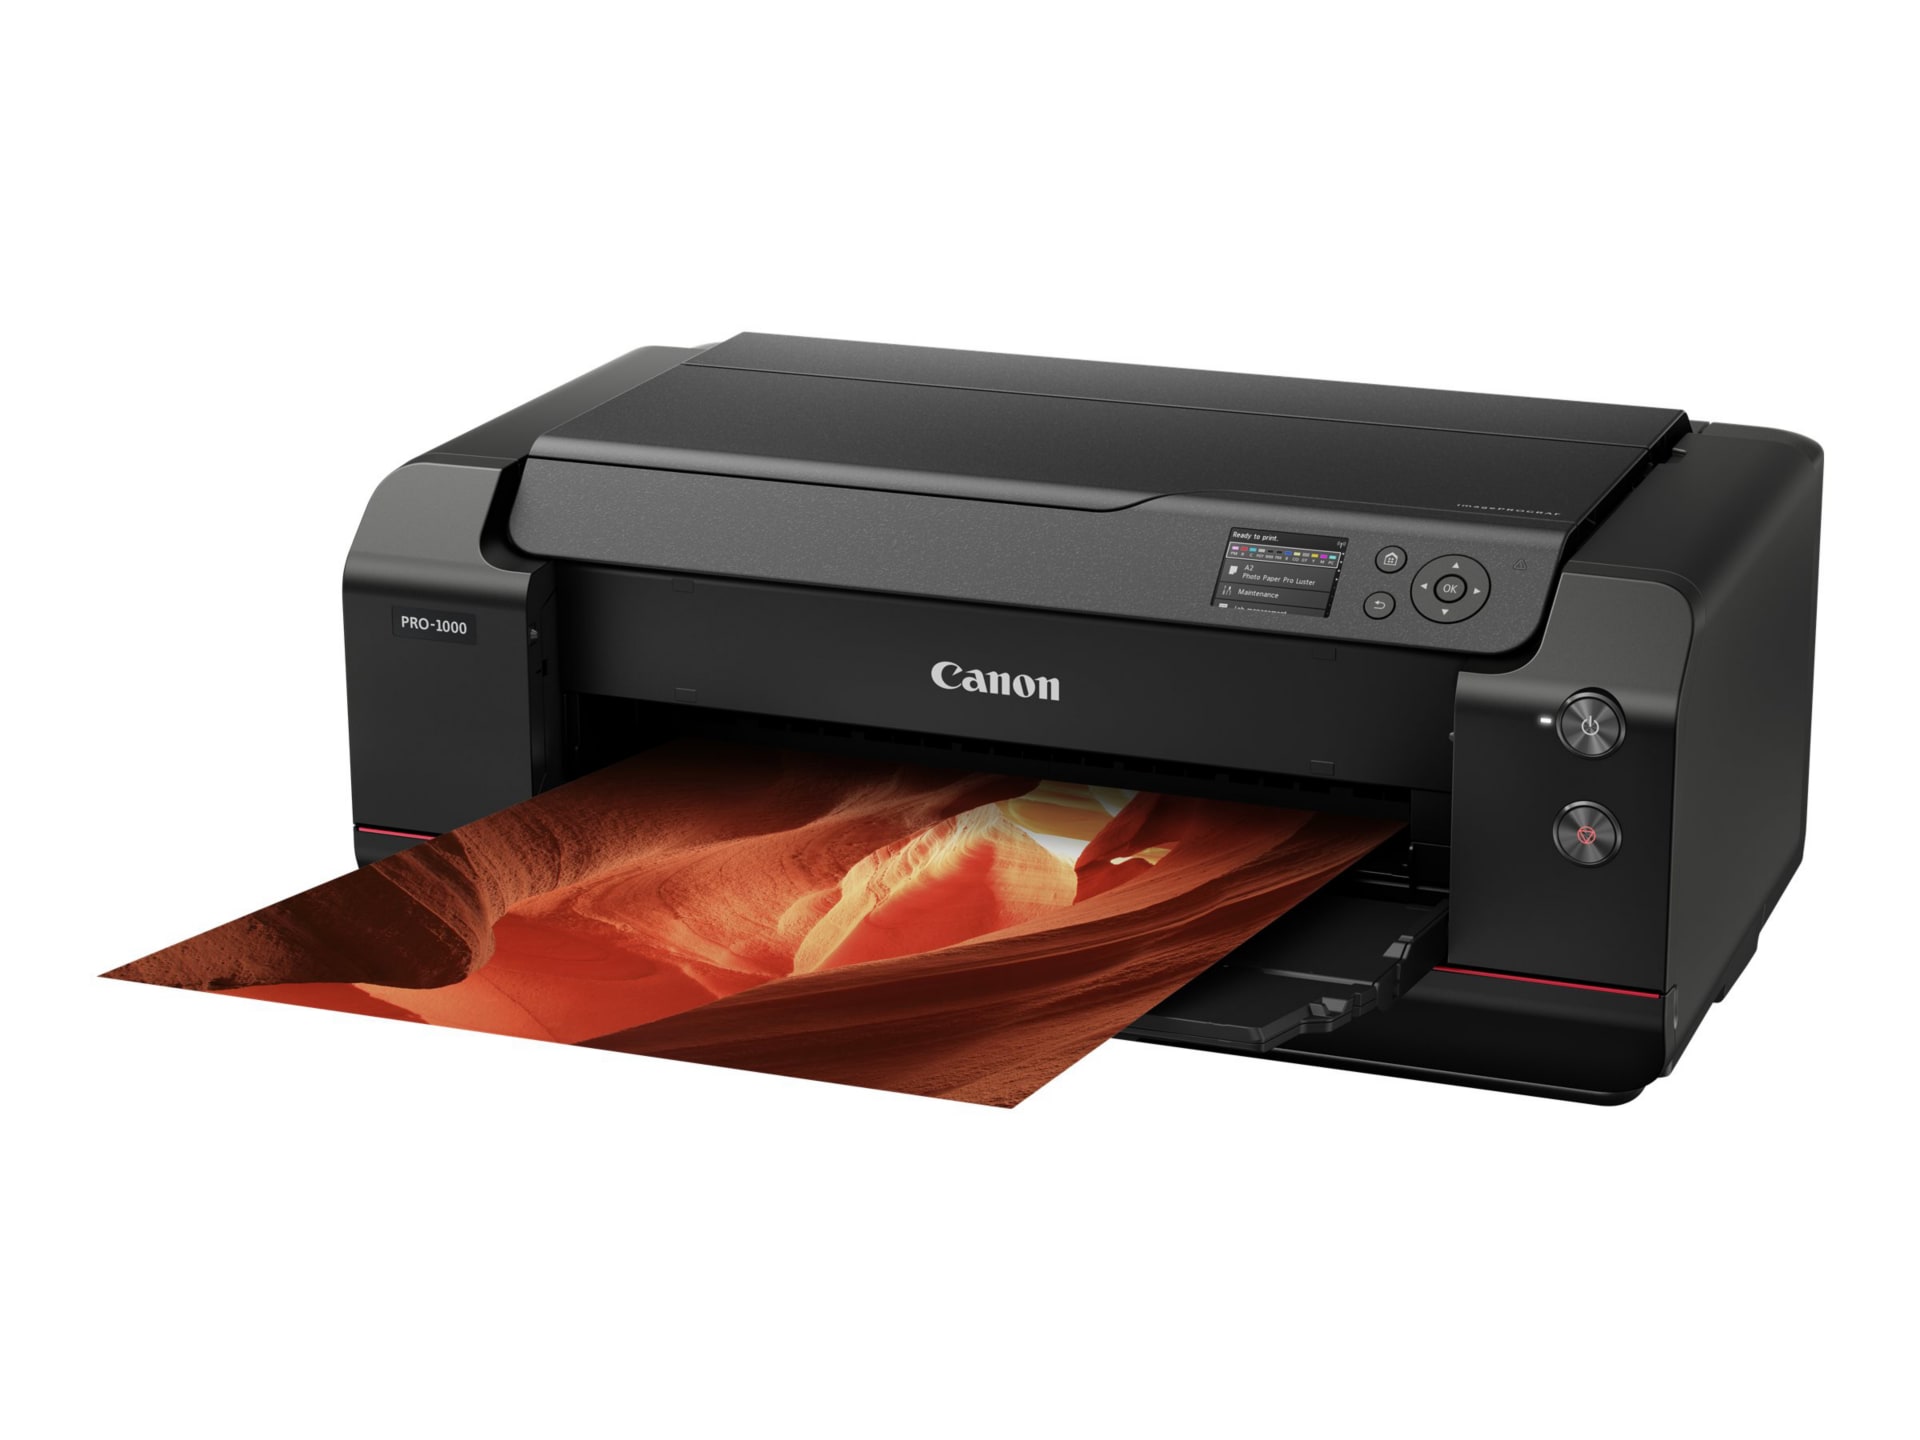 Canon imagePROGRAF PRO-1000 - large-format printer - color - ink-jet